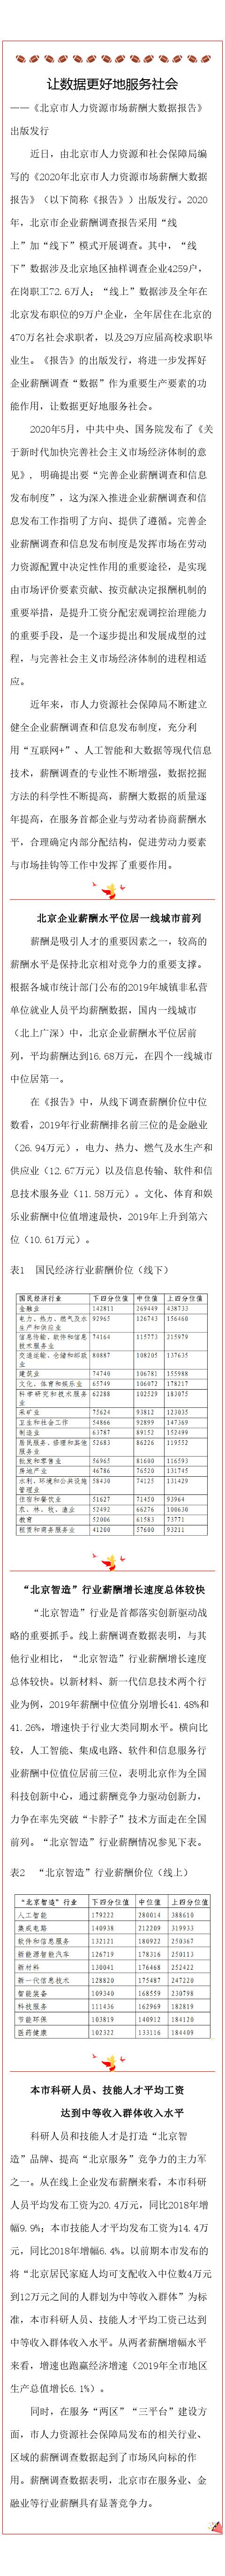 北京企业薪酬水平居一线城市首位 平均薪酬达16.68万元